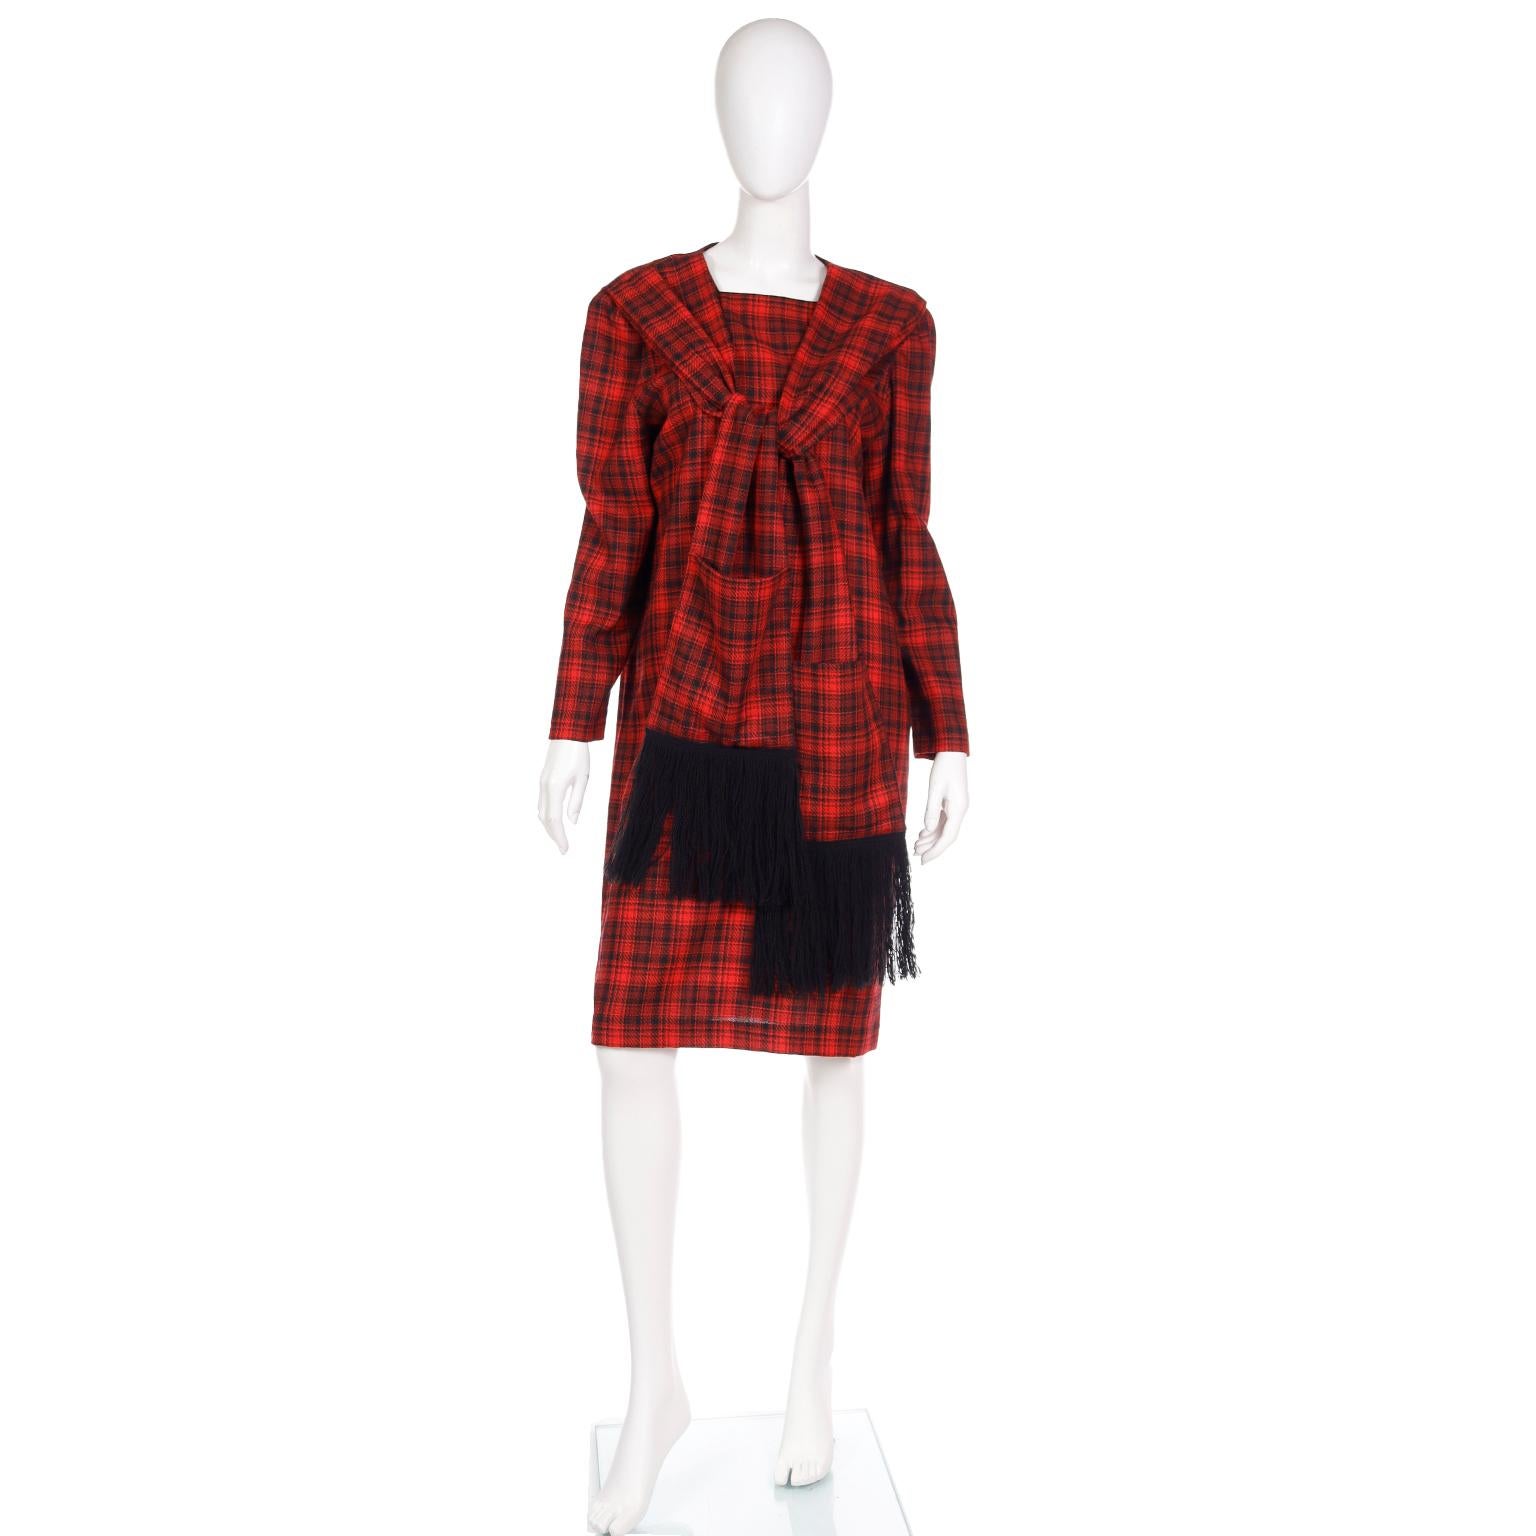 Diese Ende der 1970er oder Anfang der 1980er Jahre Pierre Cardin rot karierten Wolle langärmelige Kleid ist so einzigartig und sehr tragbar heute! Die Shift-Silhouette und der schlichte quadratische Halsausschnitt werden durch aufgesetzte Paneele